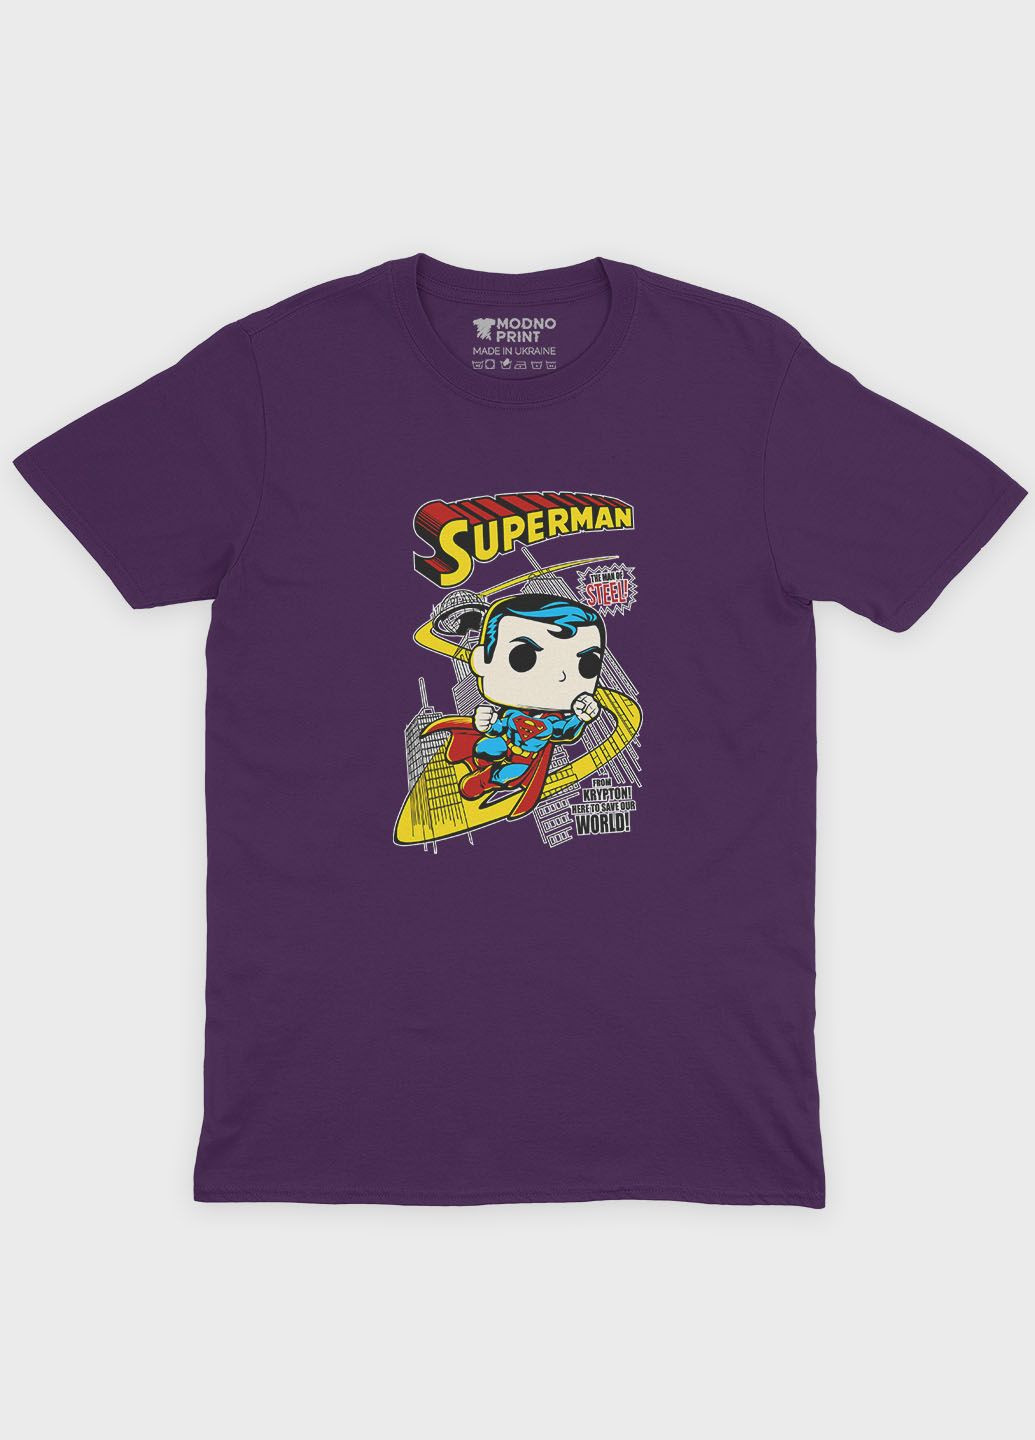 Фиолетовая демисезонная футболка для девочки с принтом супергероя - супермэн (ts001-1-dby-006-009-003-g) Modno